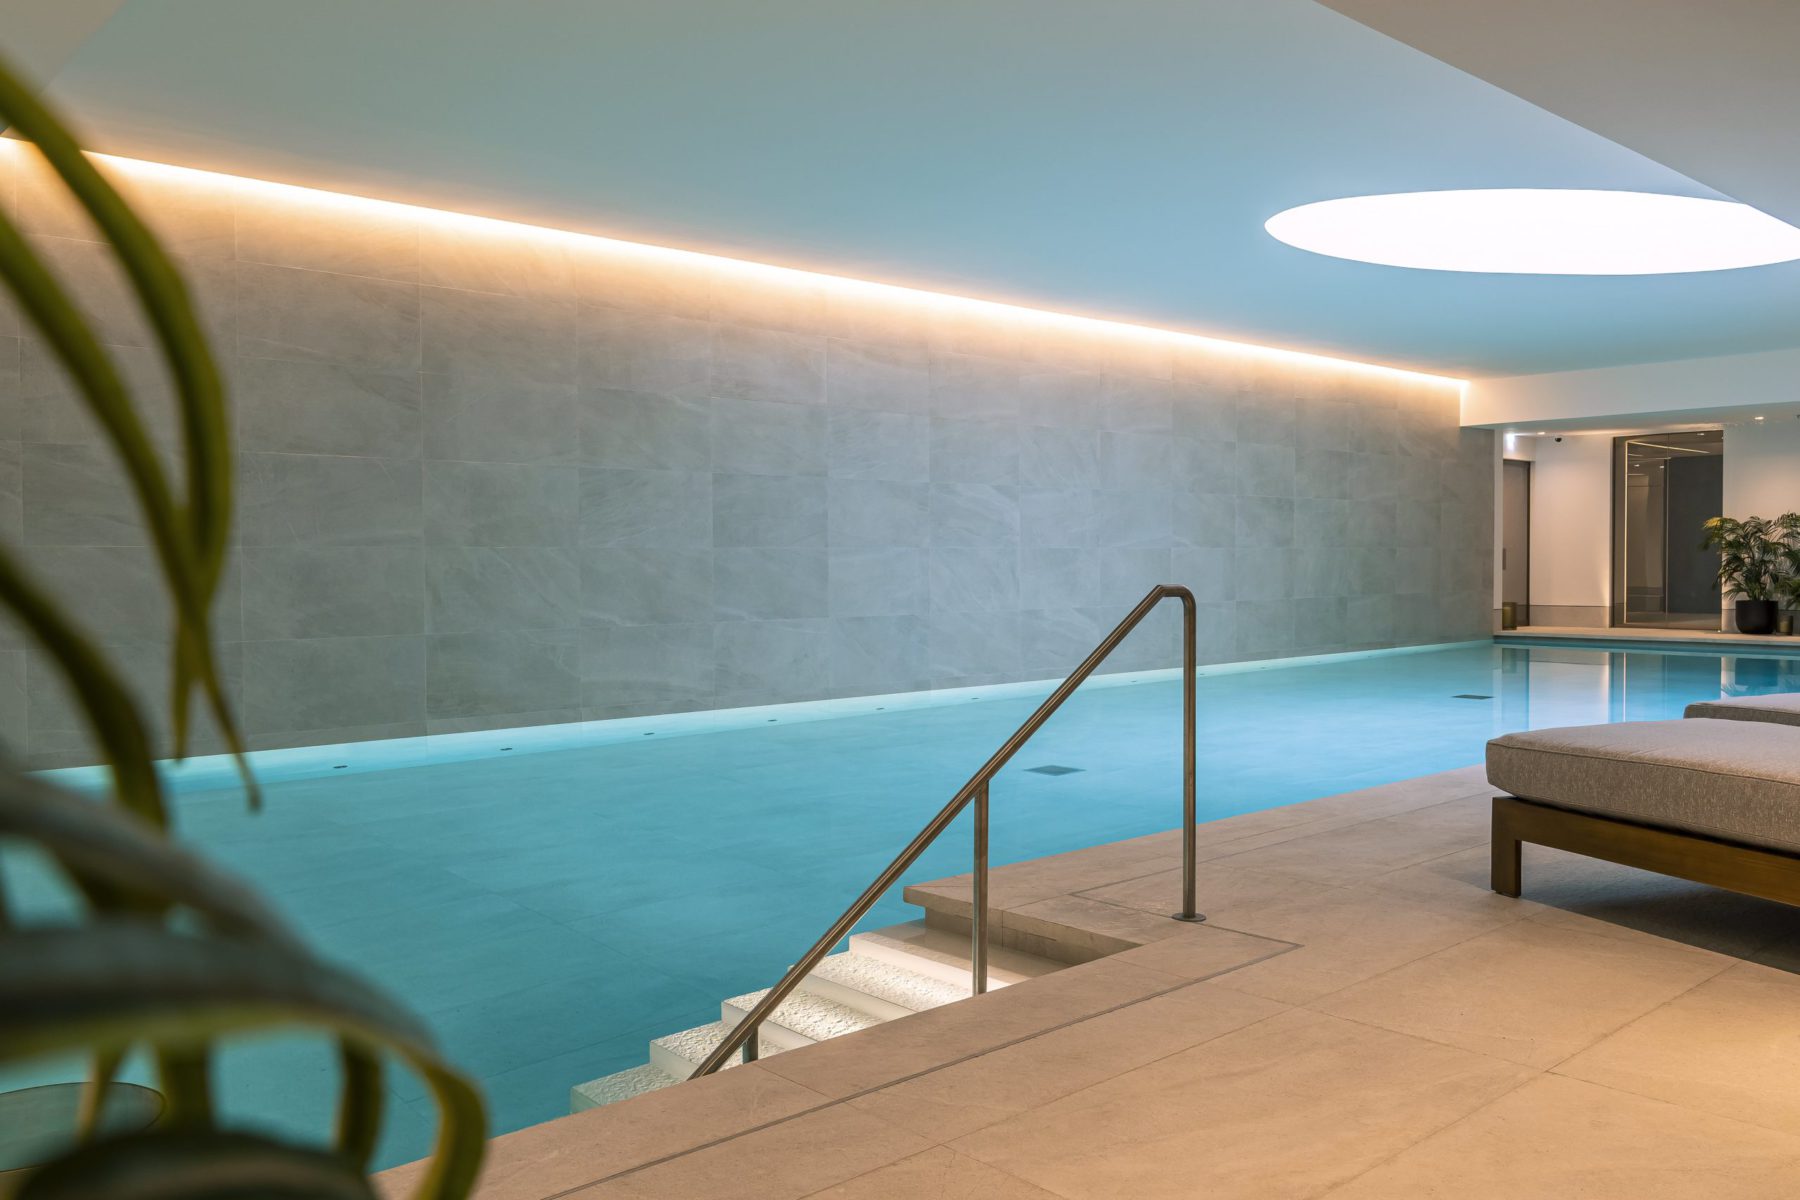 Regents Crescent Spa and Pool Project | Aqua Platinum